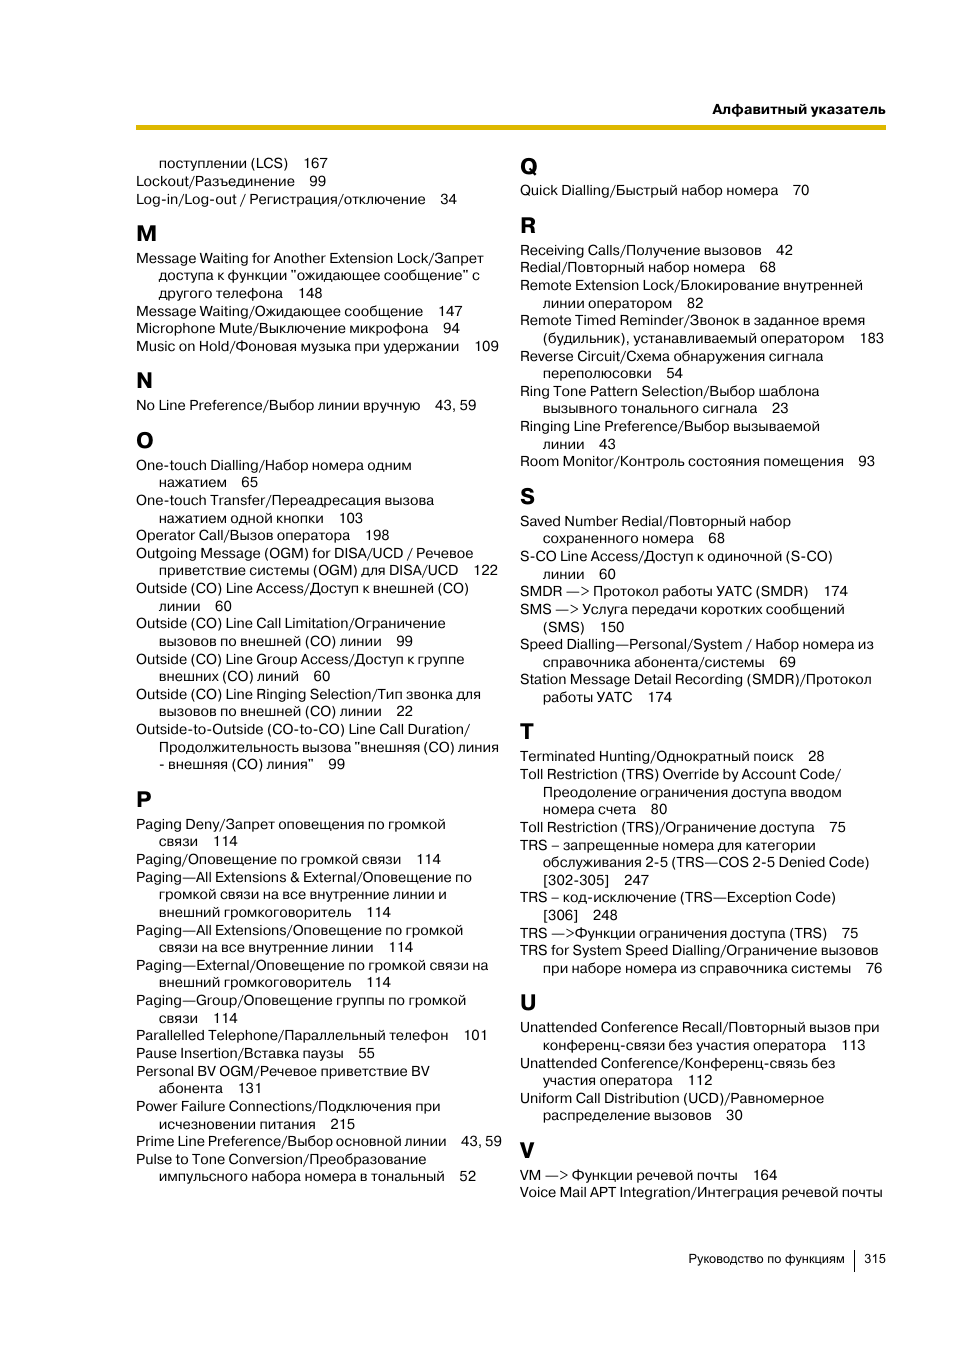 Инструкция по эксплуатации Panasonic KX-TEA308RU | Страница 315 / 318